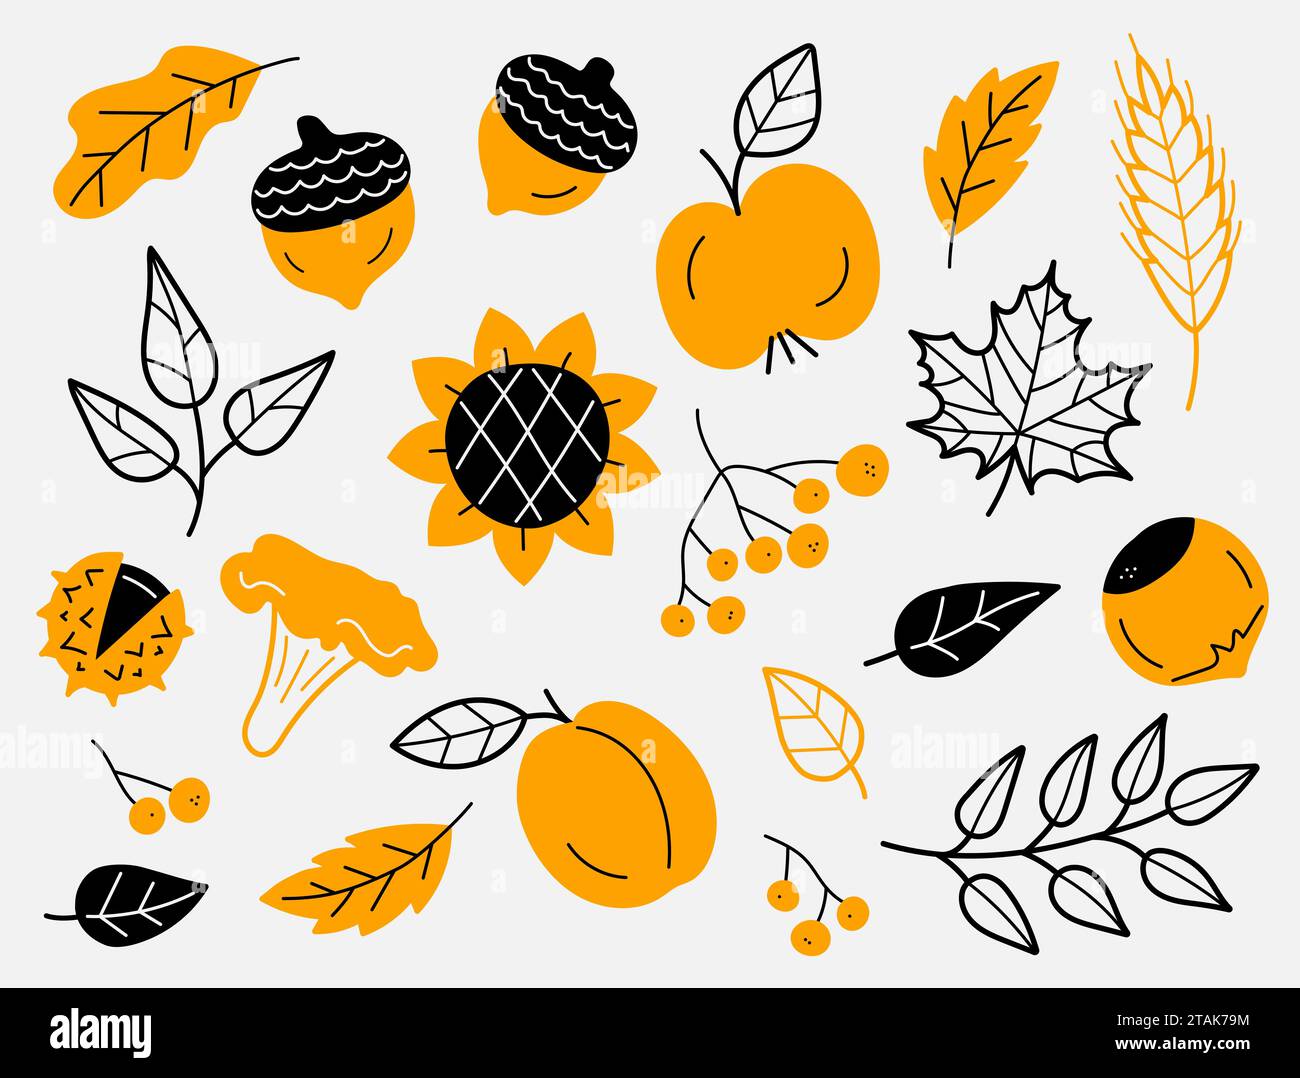 Ensemble d'éléments de récolte d'automne. Feuilles, baies, fruits, légumes, champignons, glands. Dessiné à la main, croquis. Illustration vectorielle dans le style doodle. Illustration de Vecteur